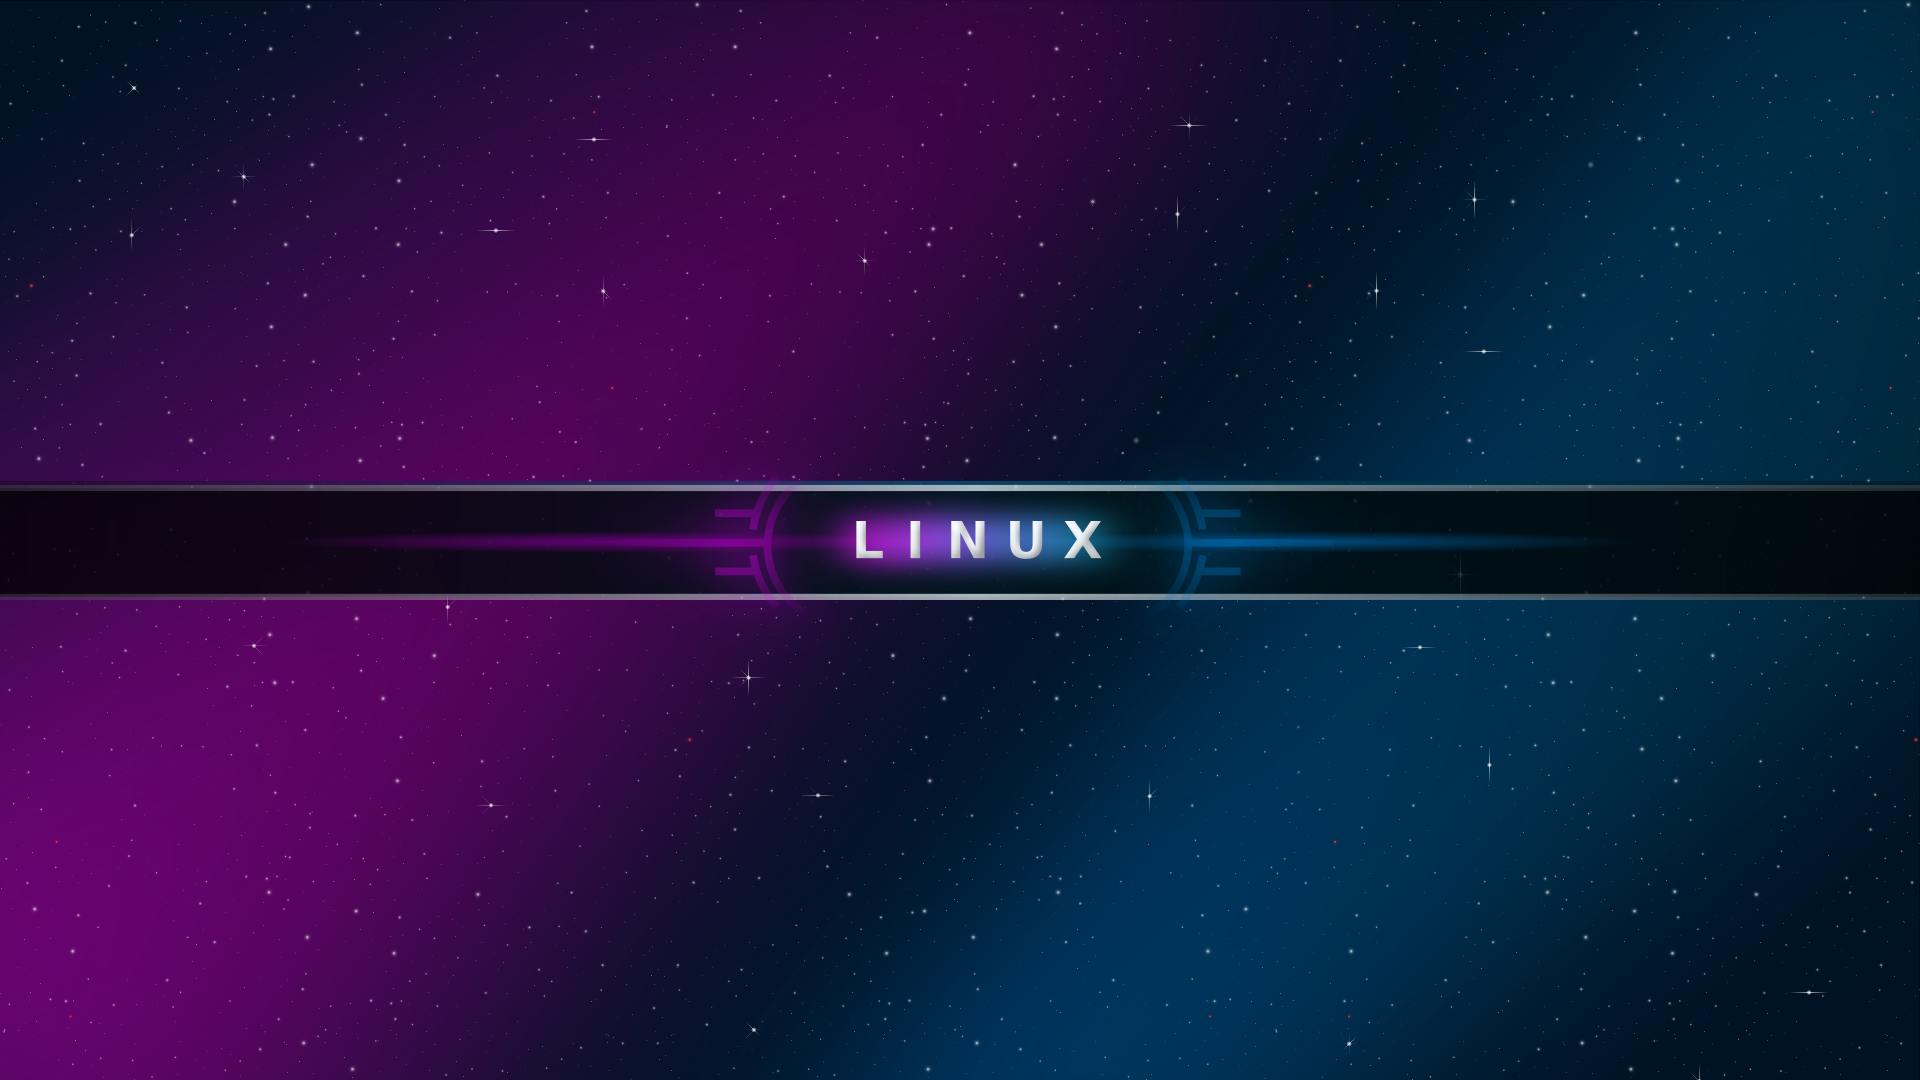 Cách tự động đặt hình nền mới bằng Stylish trên Linux  Học trực tuyến  CNTT học lập trình từ cơ bản đến nâng cao